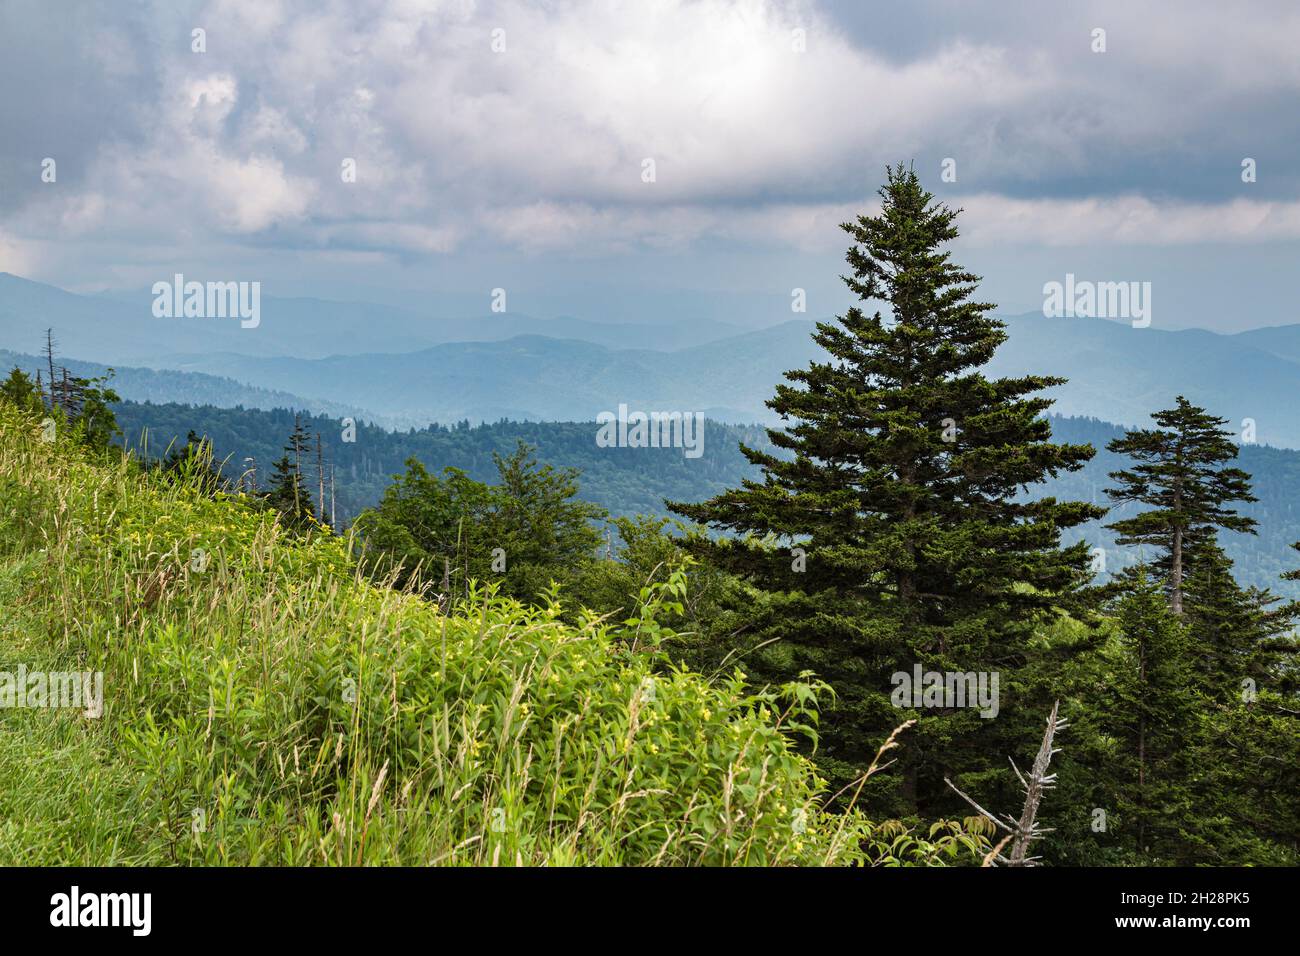 Hazy Blue Ridge Mountains au loin derrière des arbres à feuilles persistantes près de Clingman's Dome dans le Tennessee Banque D'Images